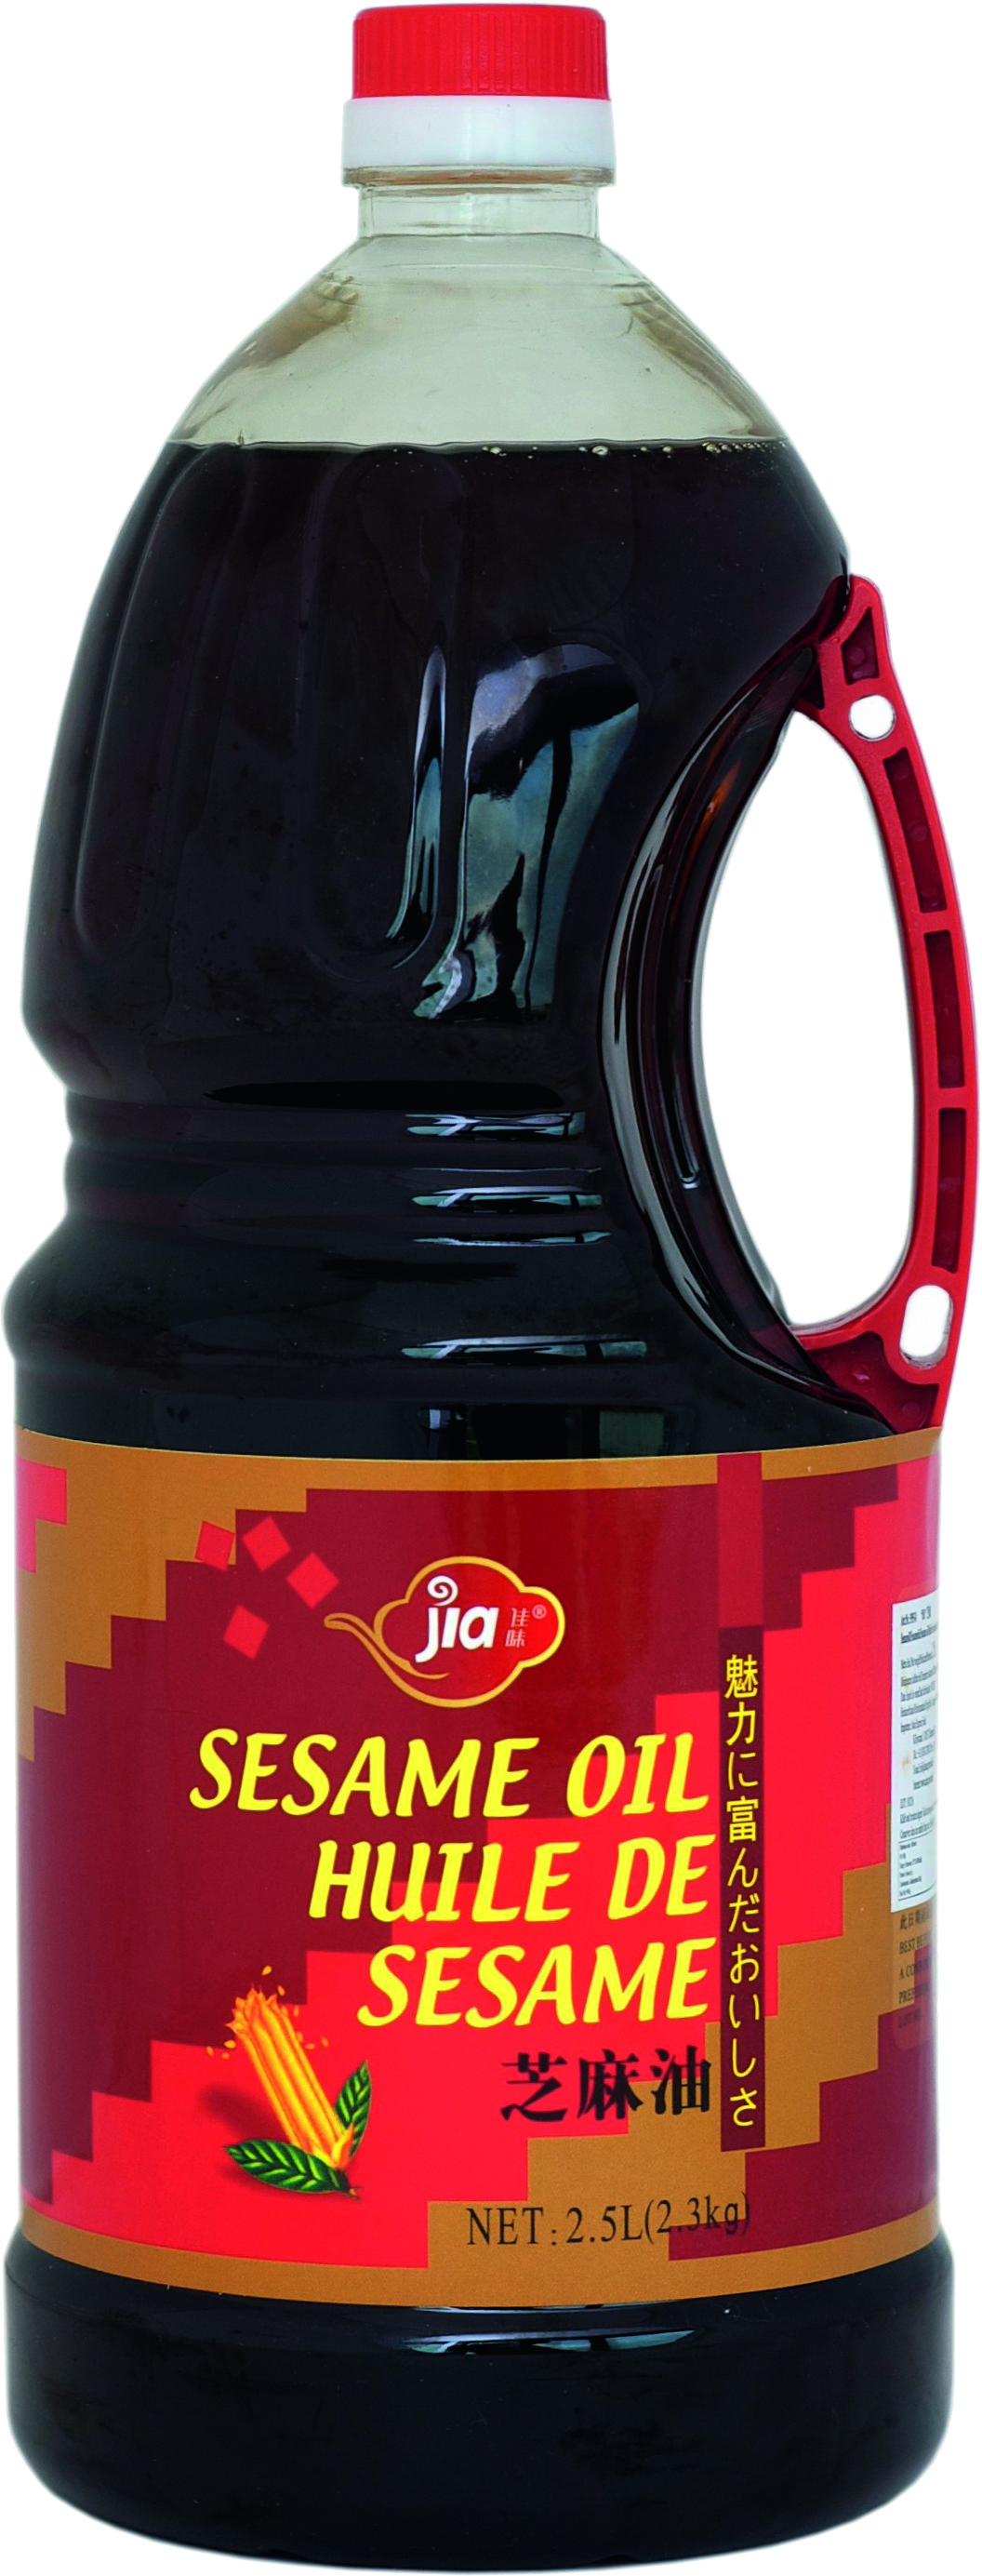 Aceite De Sésamo 6 X 2,5 Ltr - Jia Brand